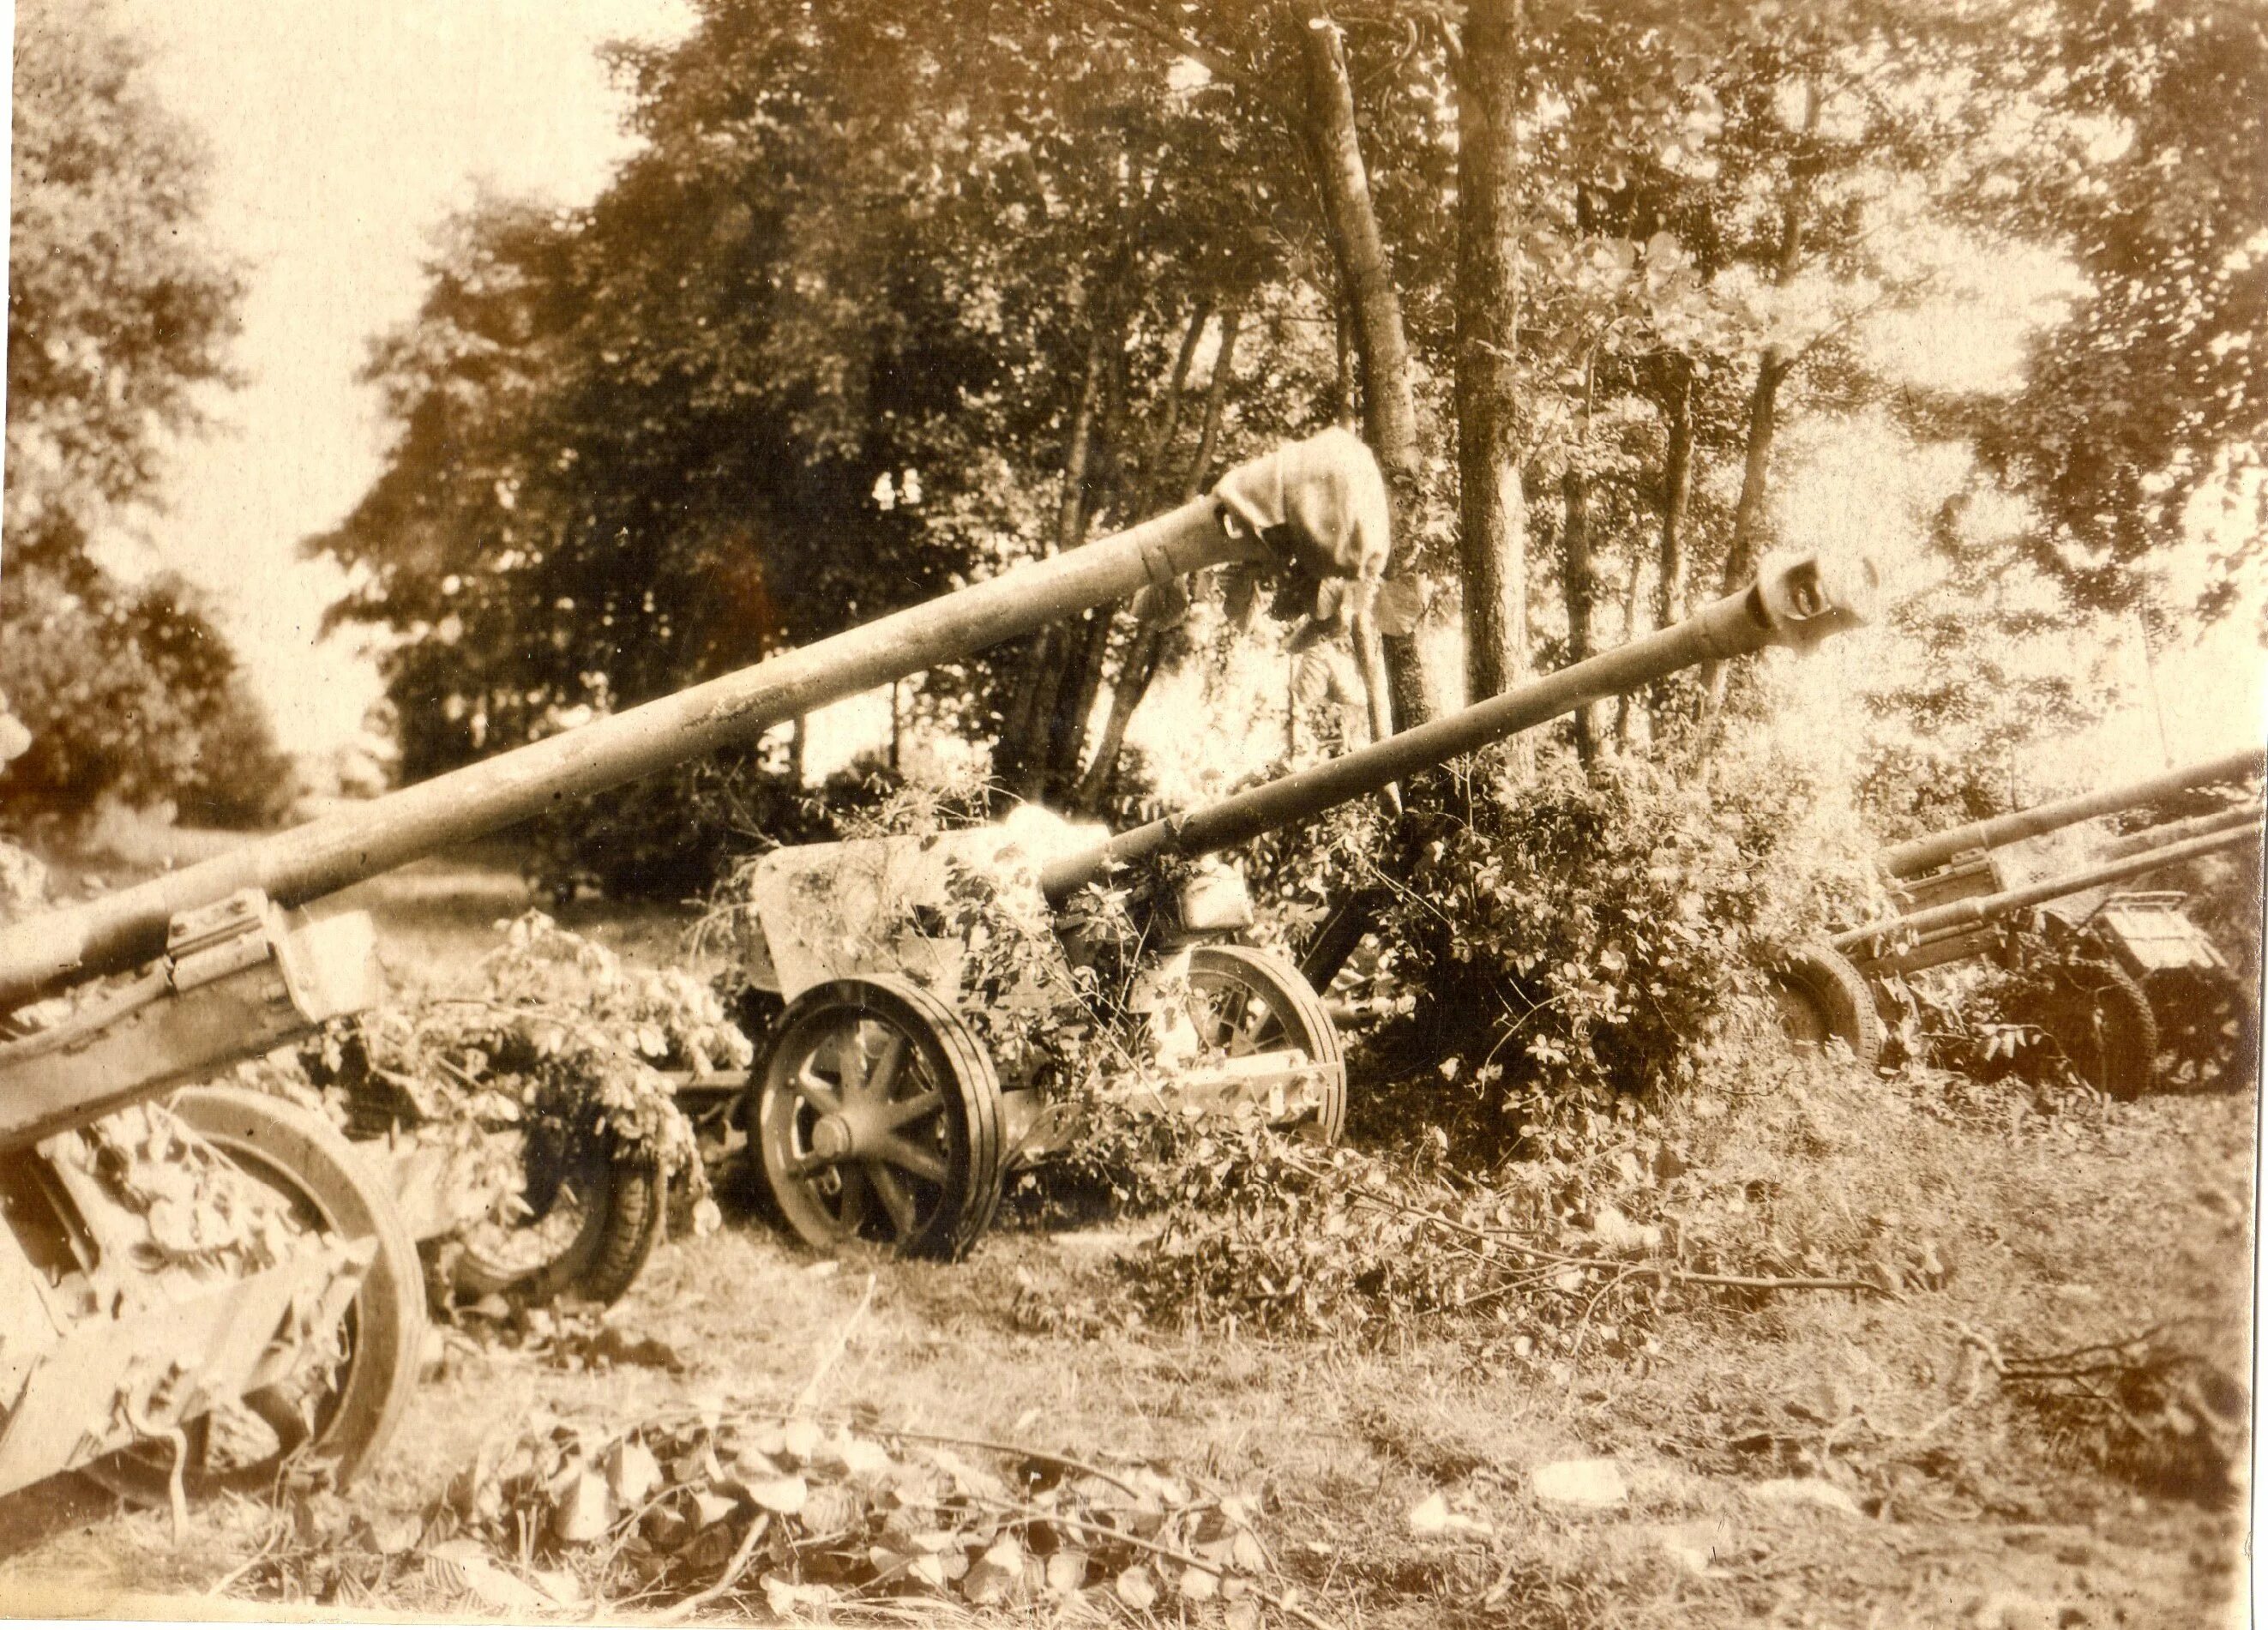 Германская 75мм противотанковая пушка Pak 40. 75-Мм противотанковая пушка Pak 40. 50 Мм противотанковая пушка вермахта Pak 38. Pak40 немецкое 75-мм противотанковое орудие.